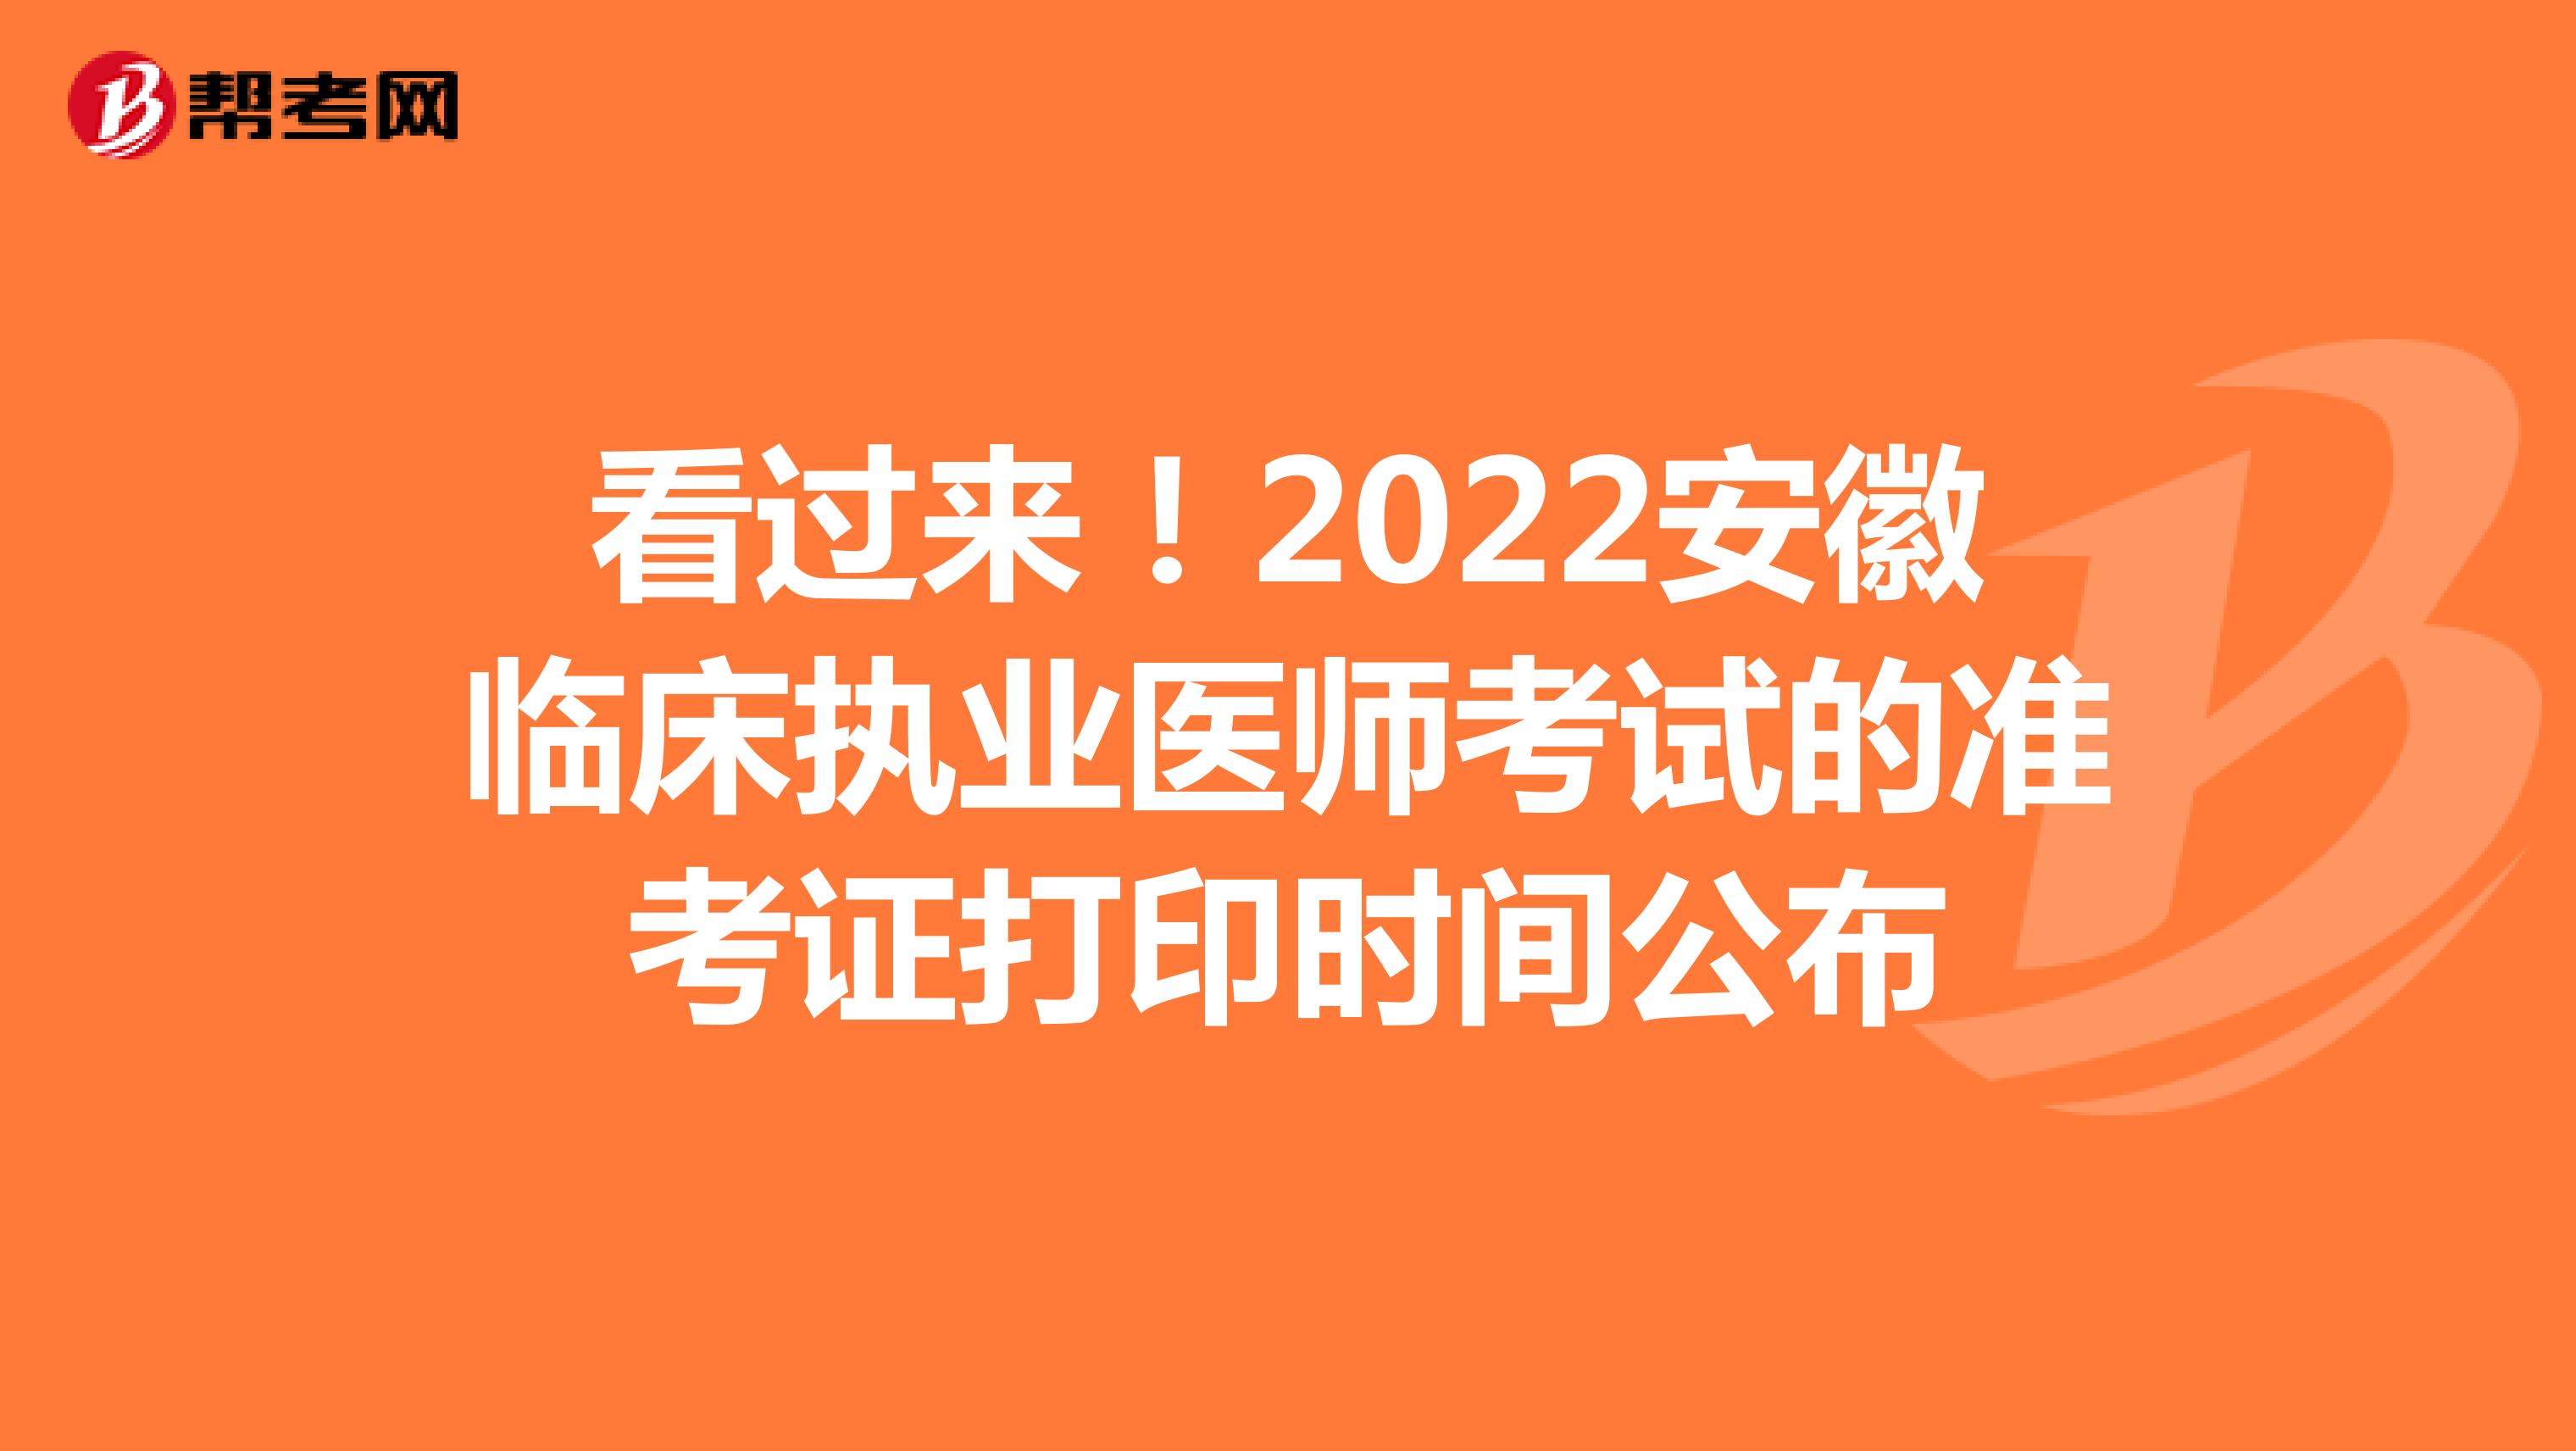 看过来！2022安徽临床执业医师考试的准考证打印时间公布